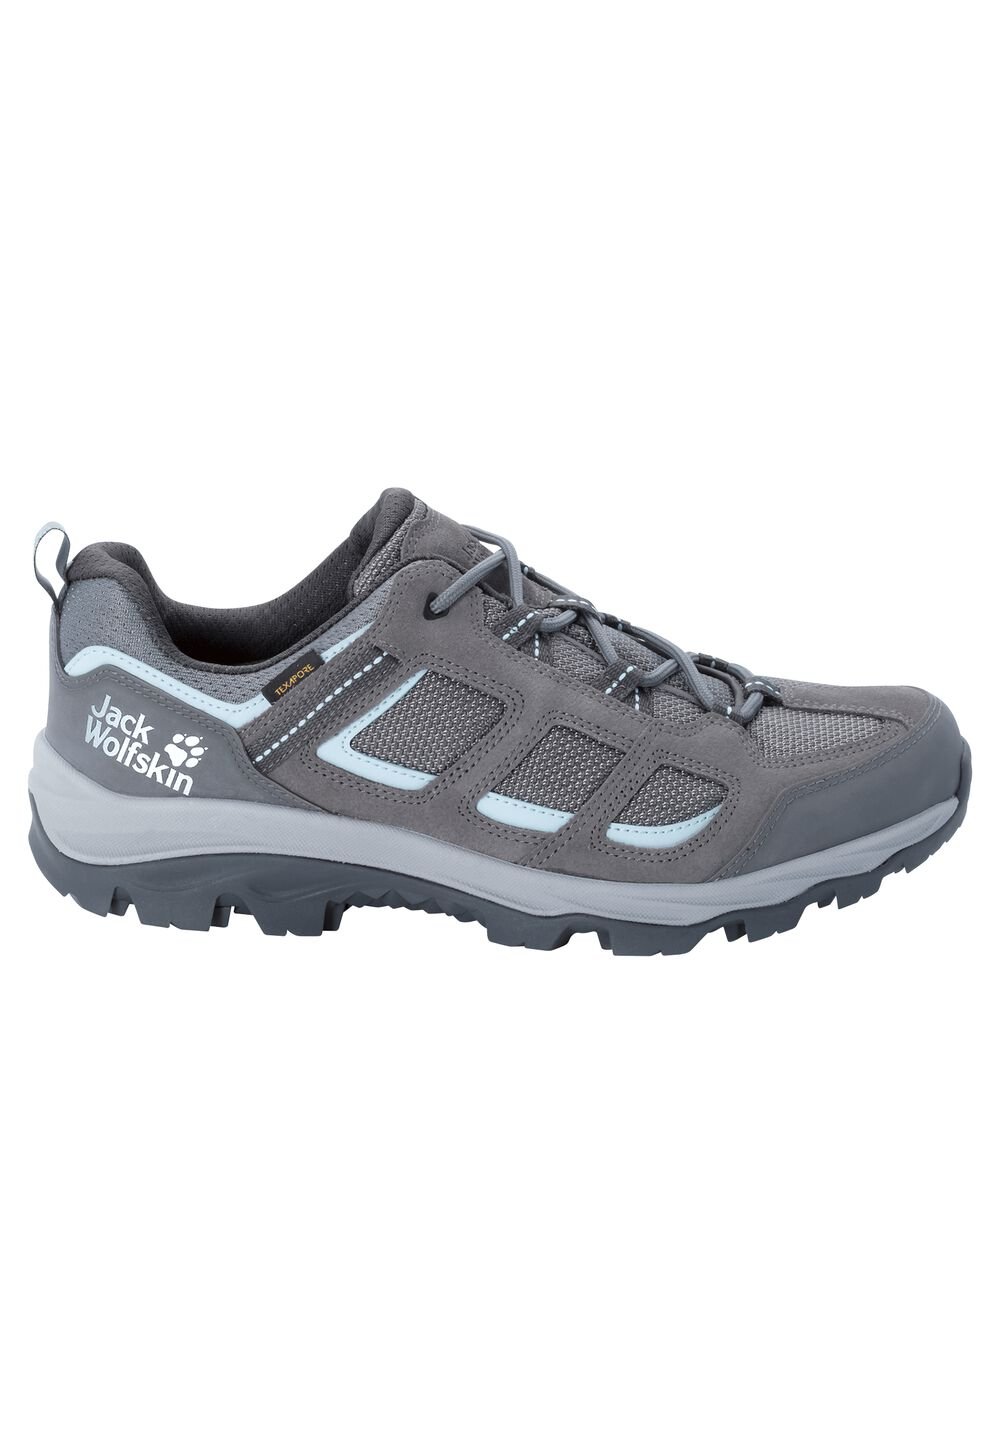 Chaussures de randonnée imperméables femmes Vojo 3 Texapore Low Women 8 gris tarmac grey / light blu